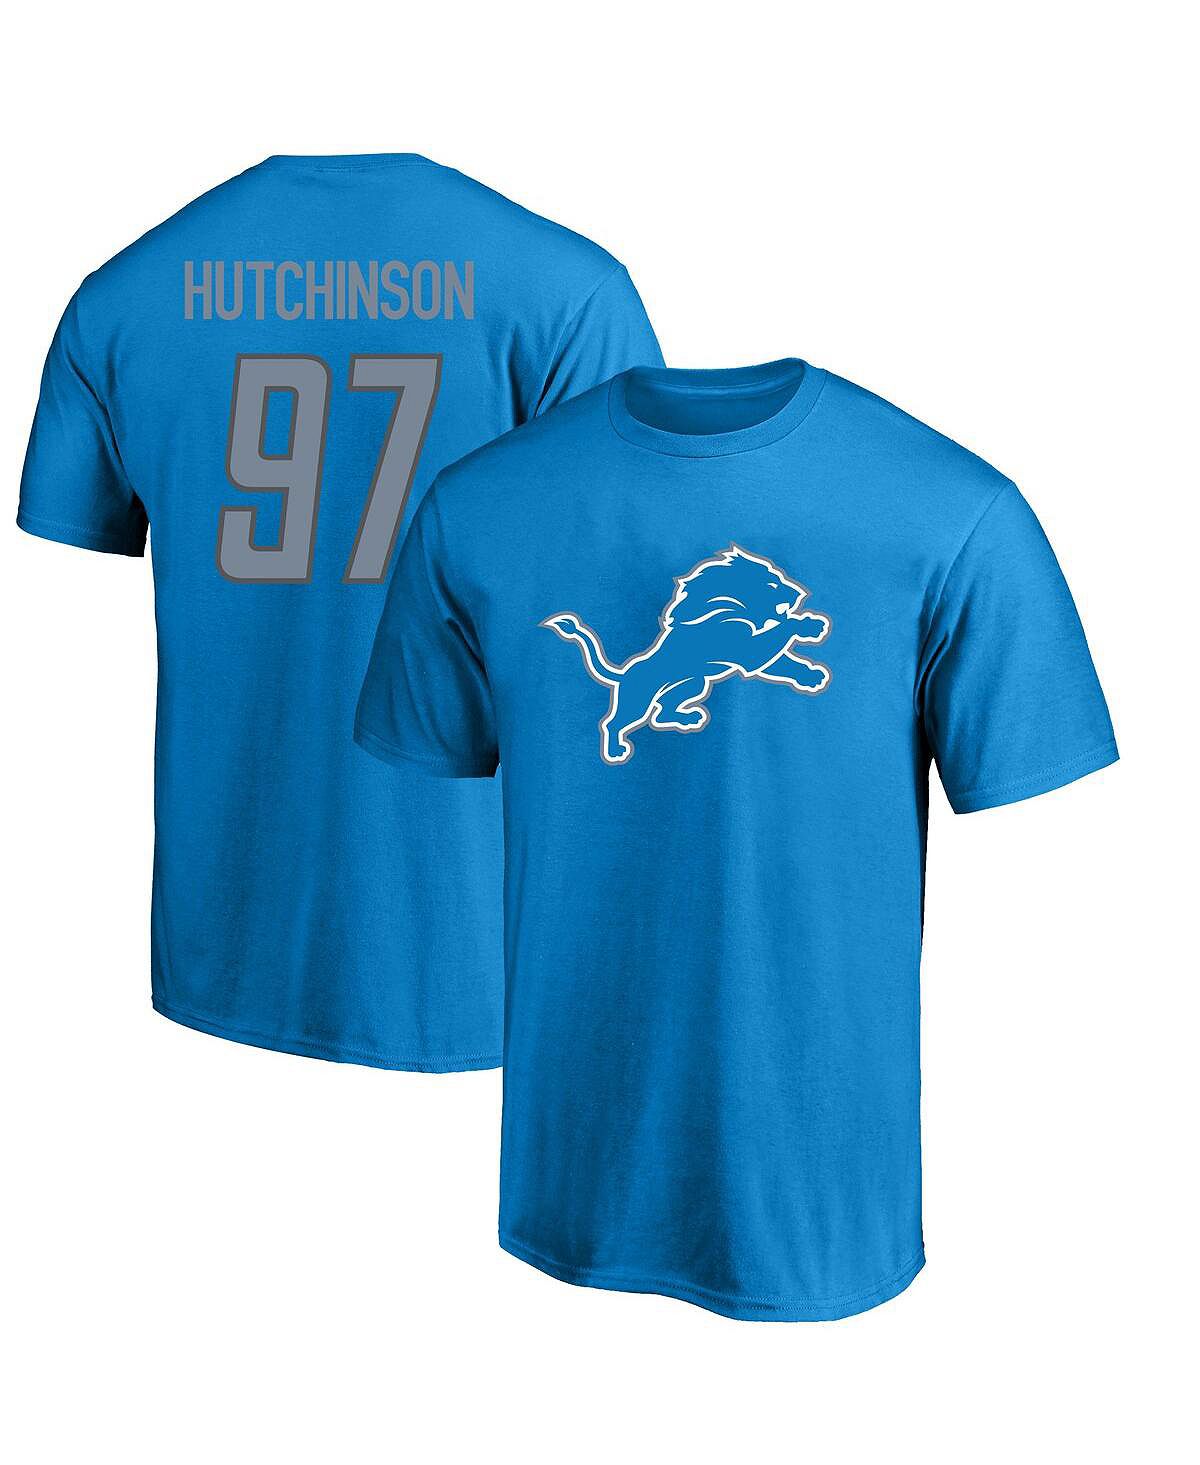 Мужская синяя футболка с логотипом Aidan Hutchinson Detroit Lions Big and Tall, имя и номер игрока Fanatics хатчинсон стивен хоукинс лоренс океаны